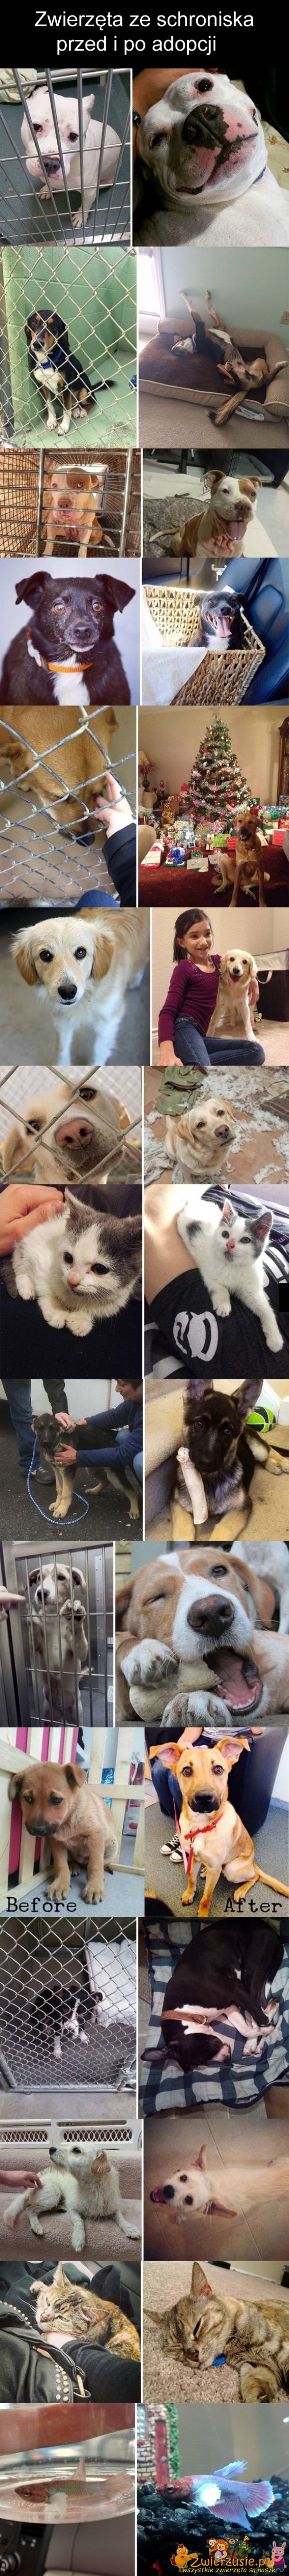 Zwierzęta przed i po adopcji